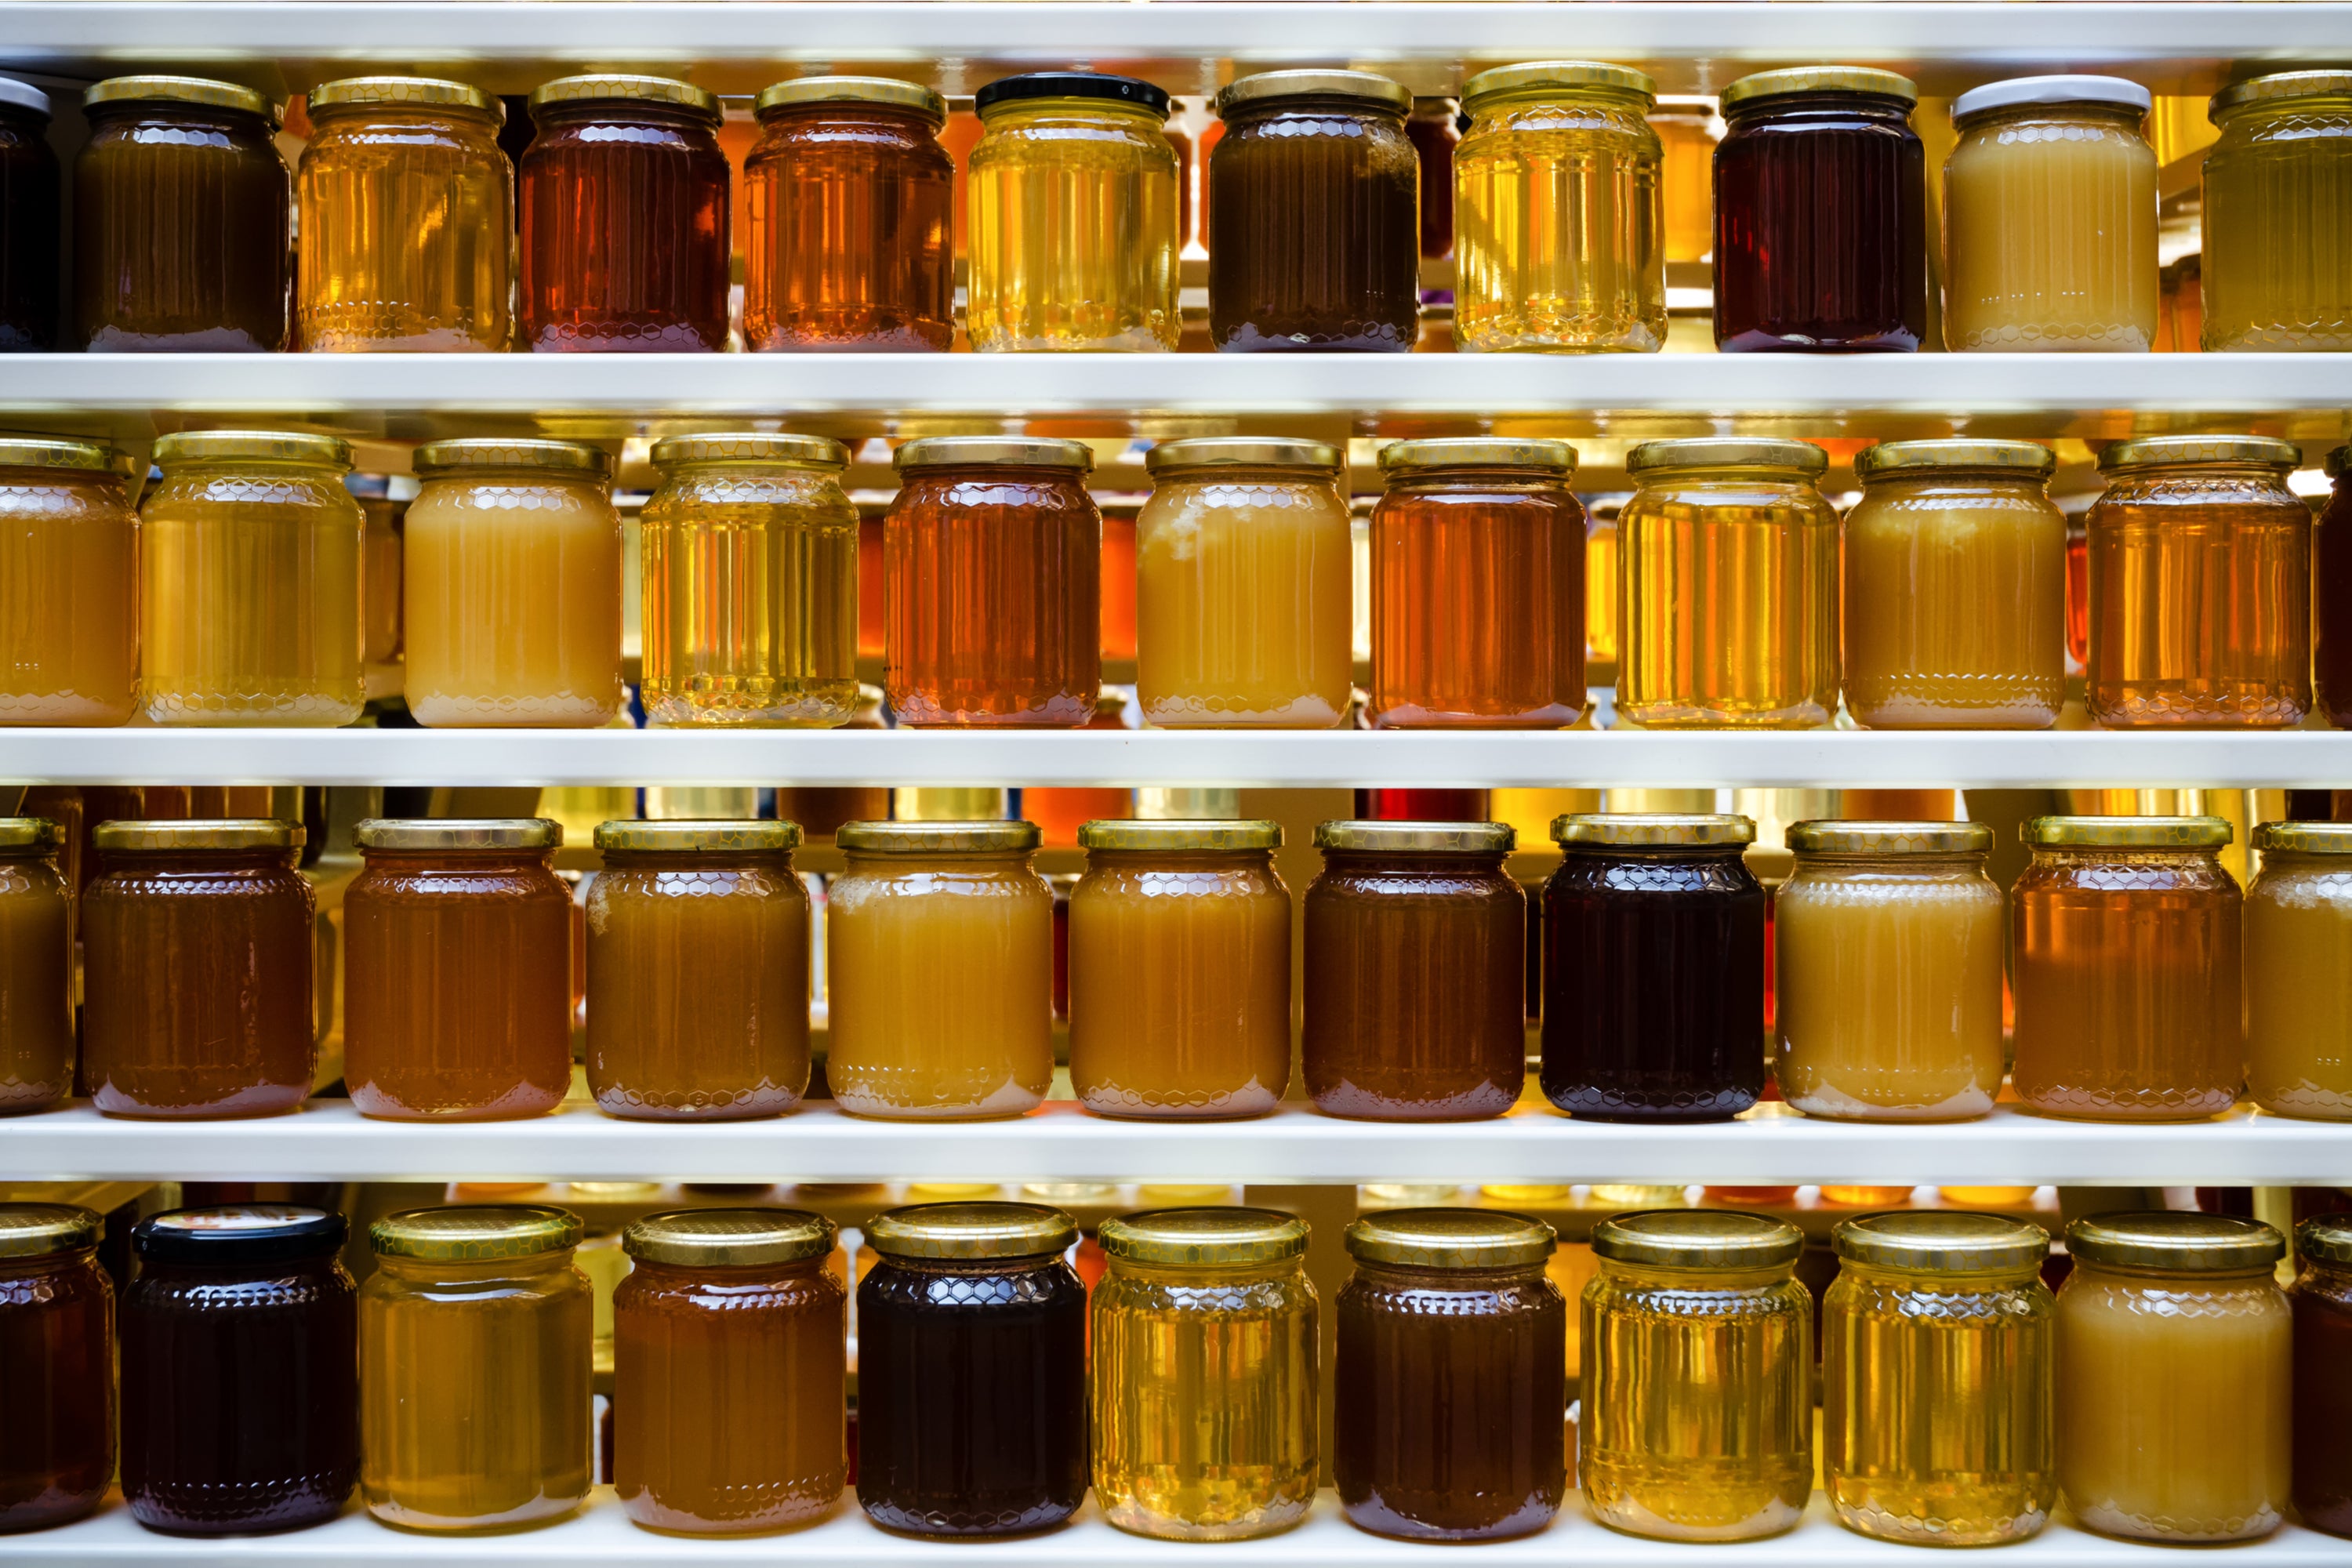 Jars of crystallised and runny honey on shelves